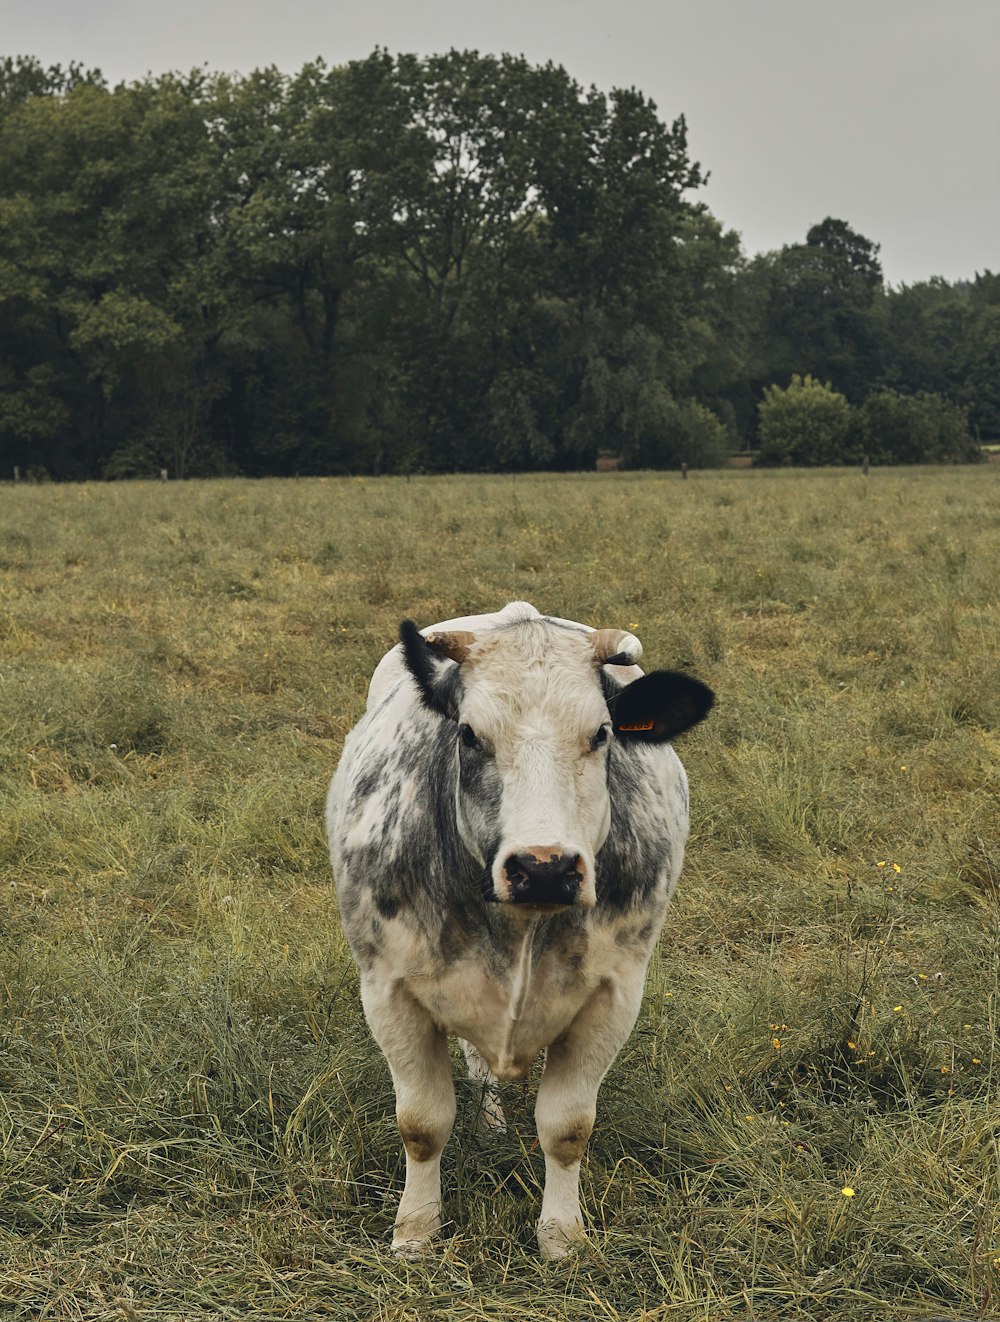 vaca branca e preta em um campo de grama verde durante o dia